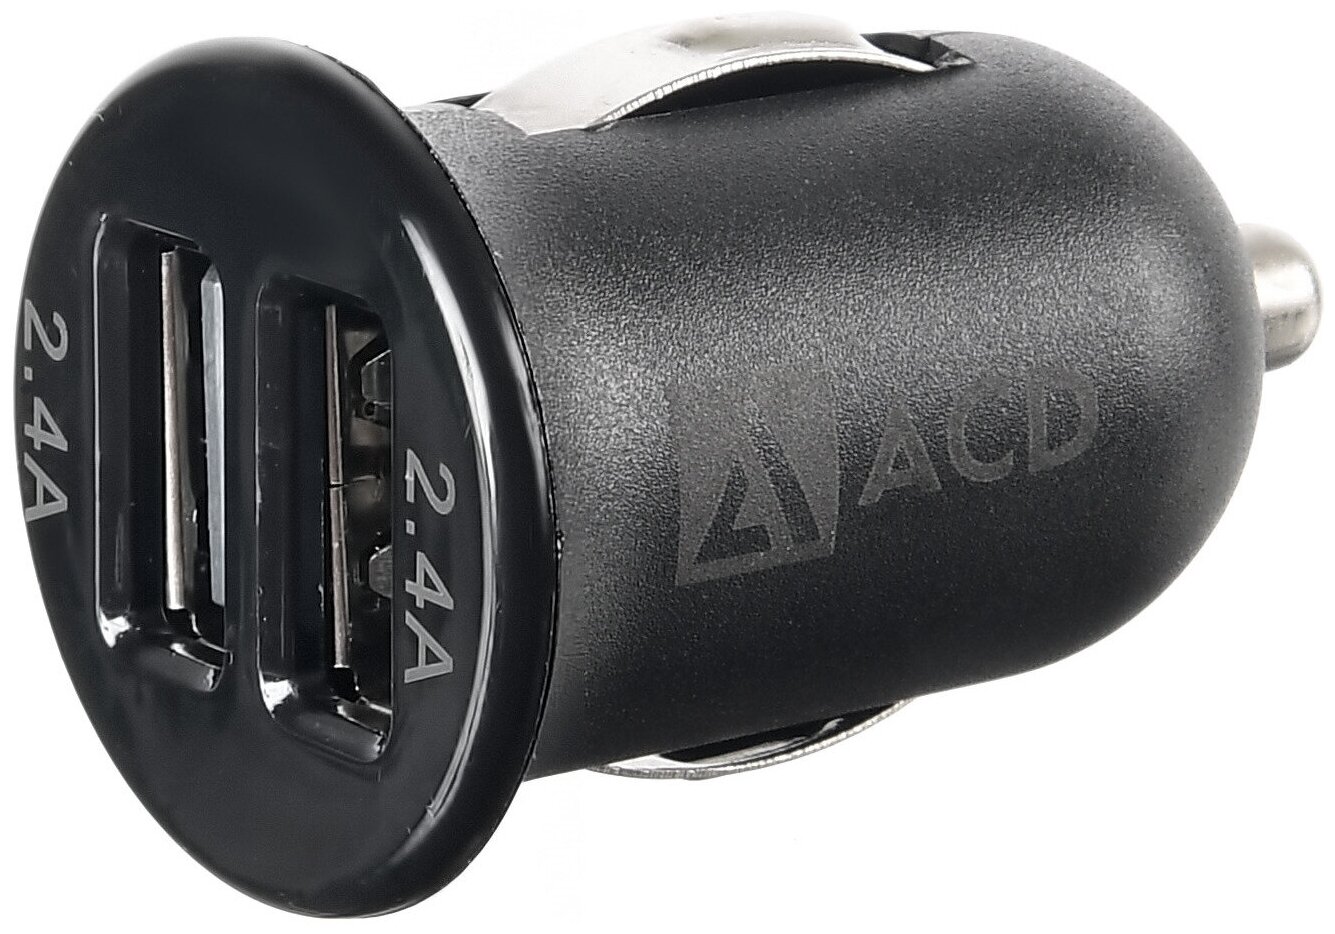 Автомобильное зарядное устройство ACD ACD-C242-X1B 4.8 А черный